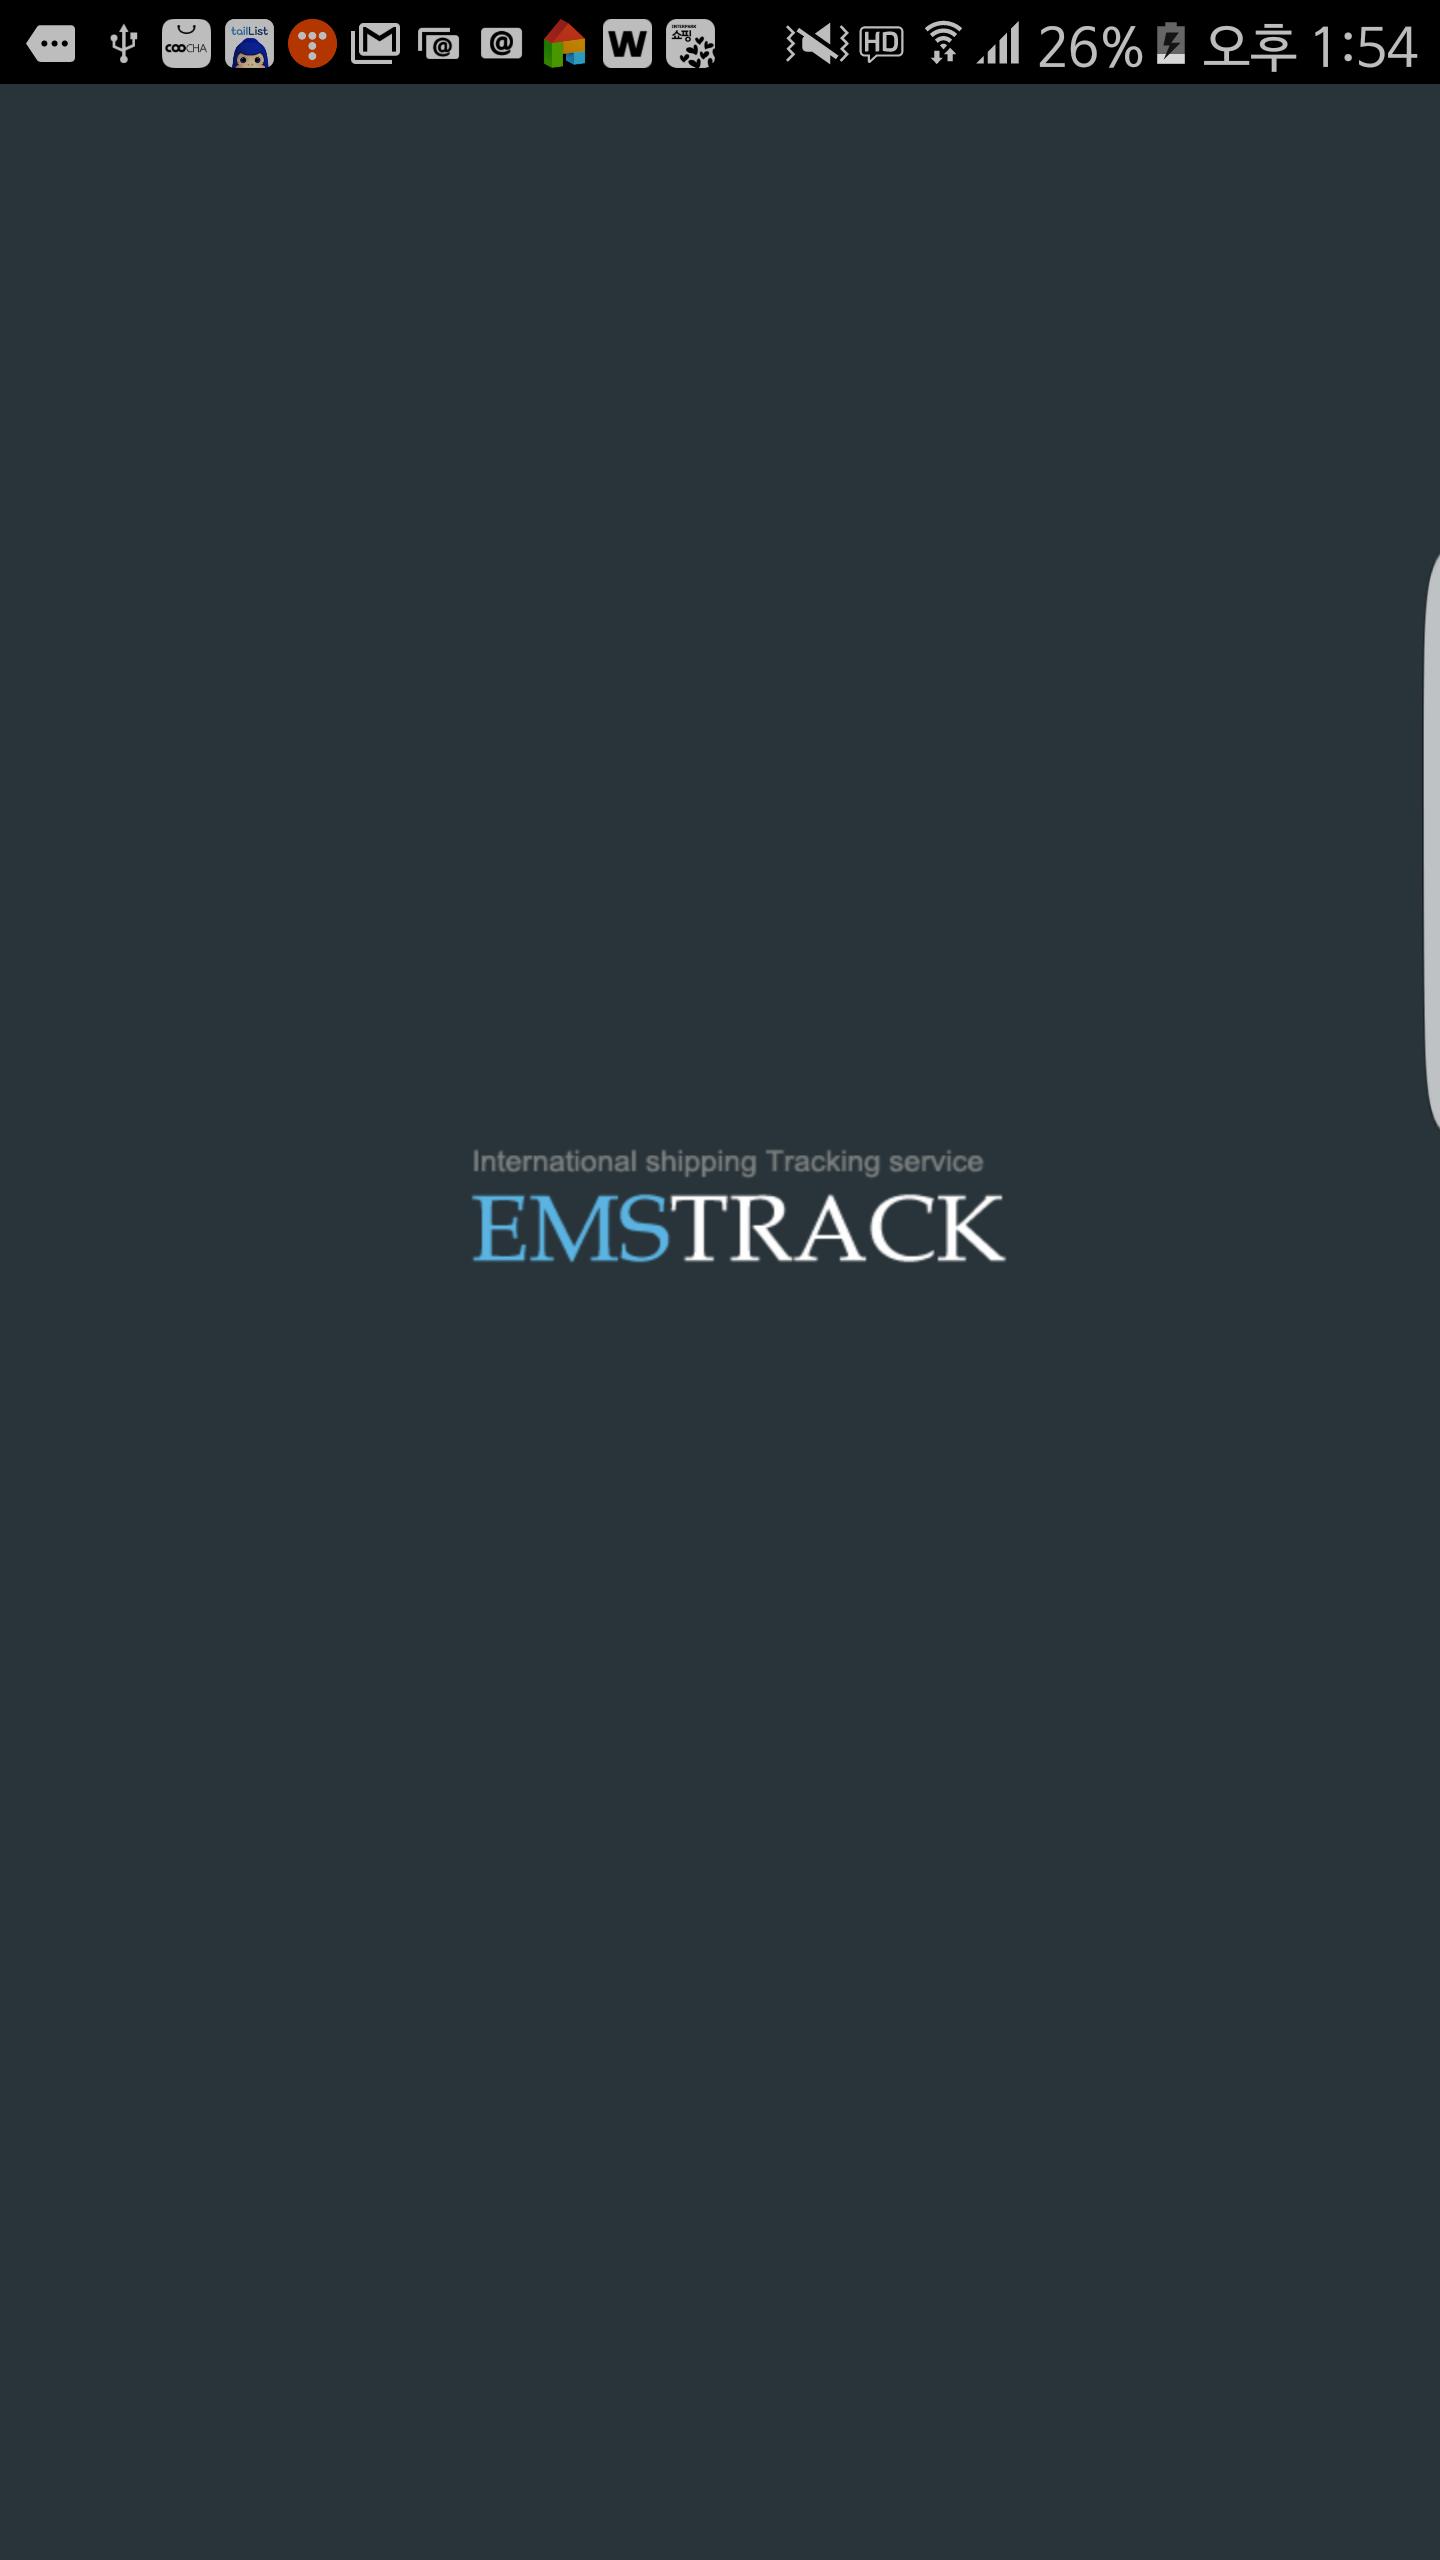 Ems track